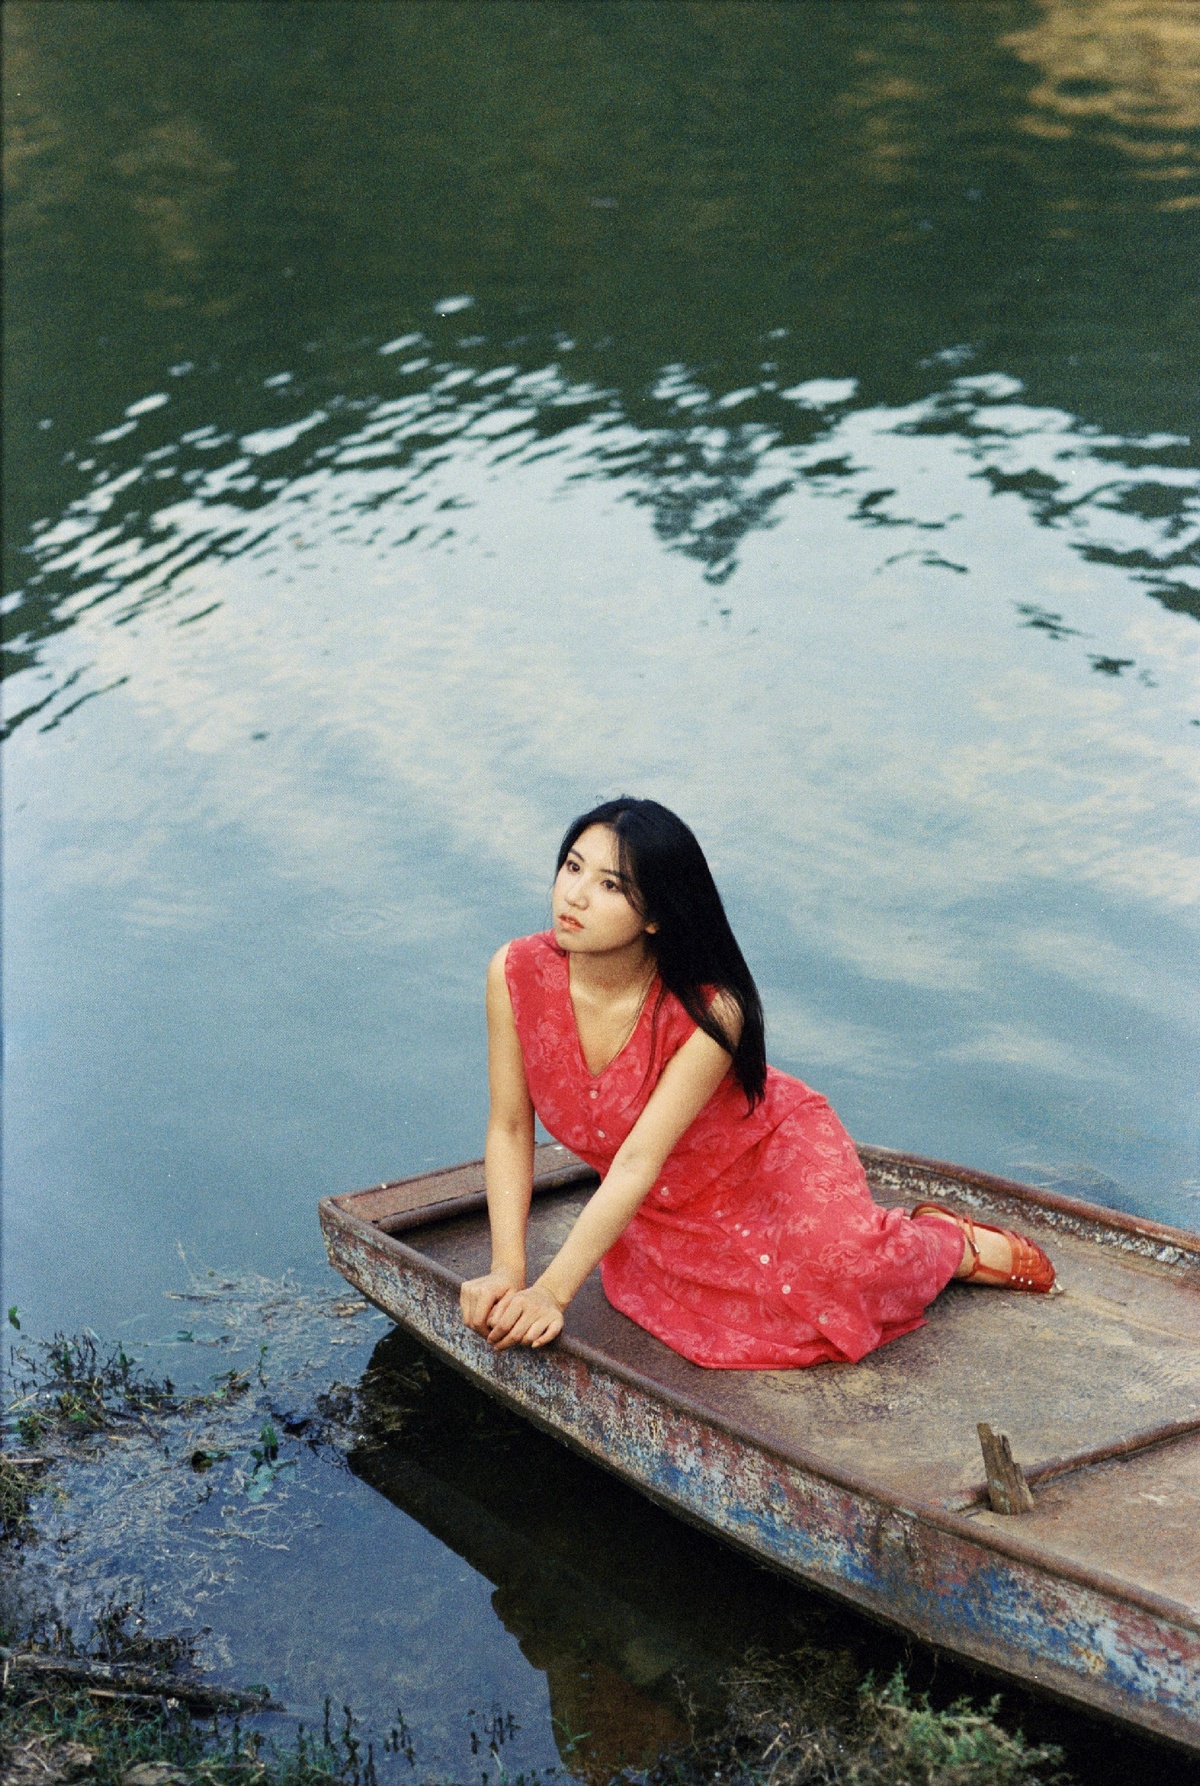 一位穿着红裙子的年轻女子坐在小船里